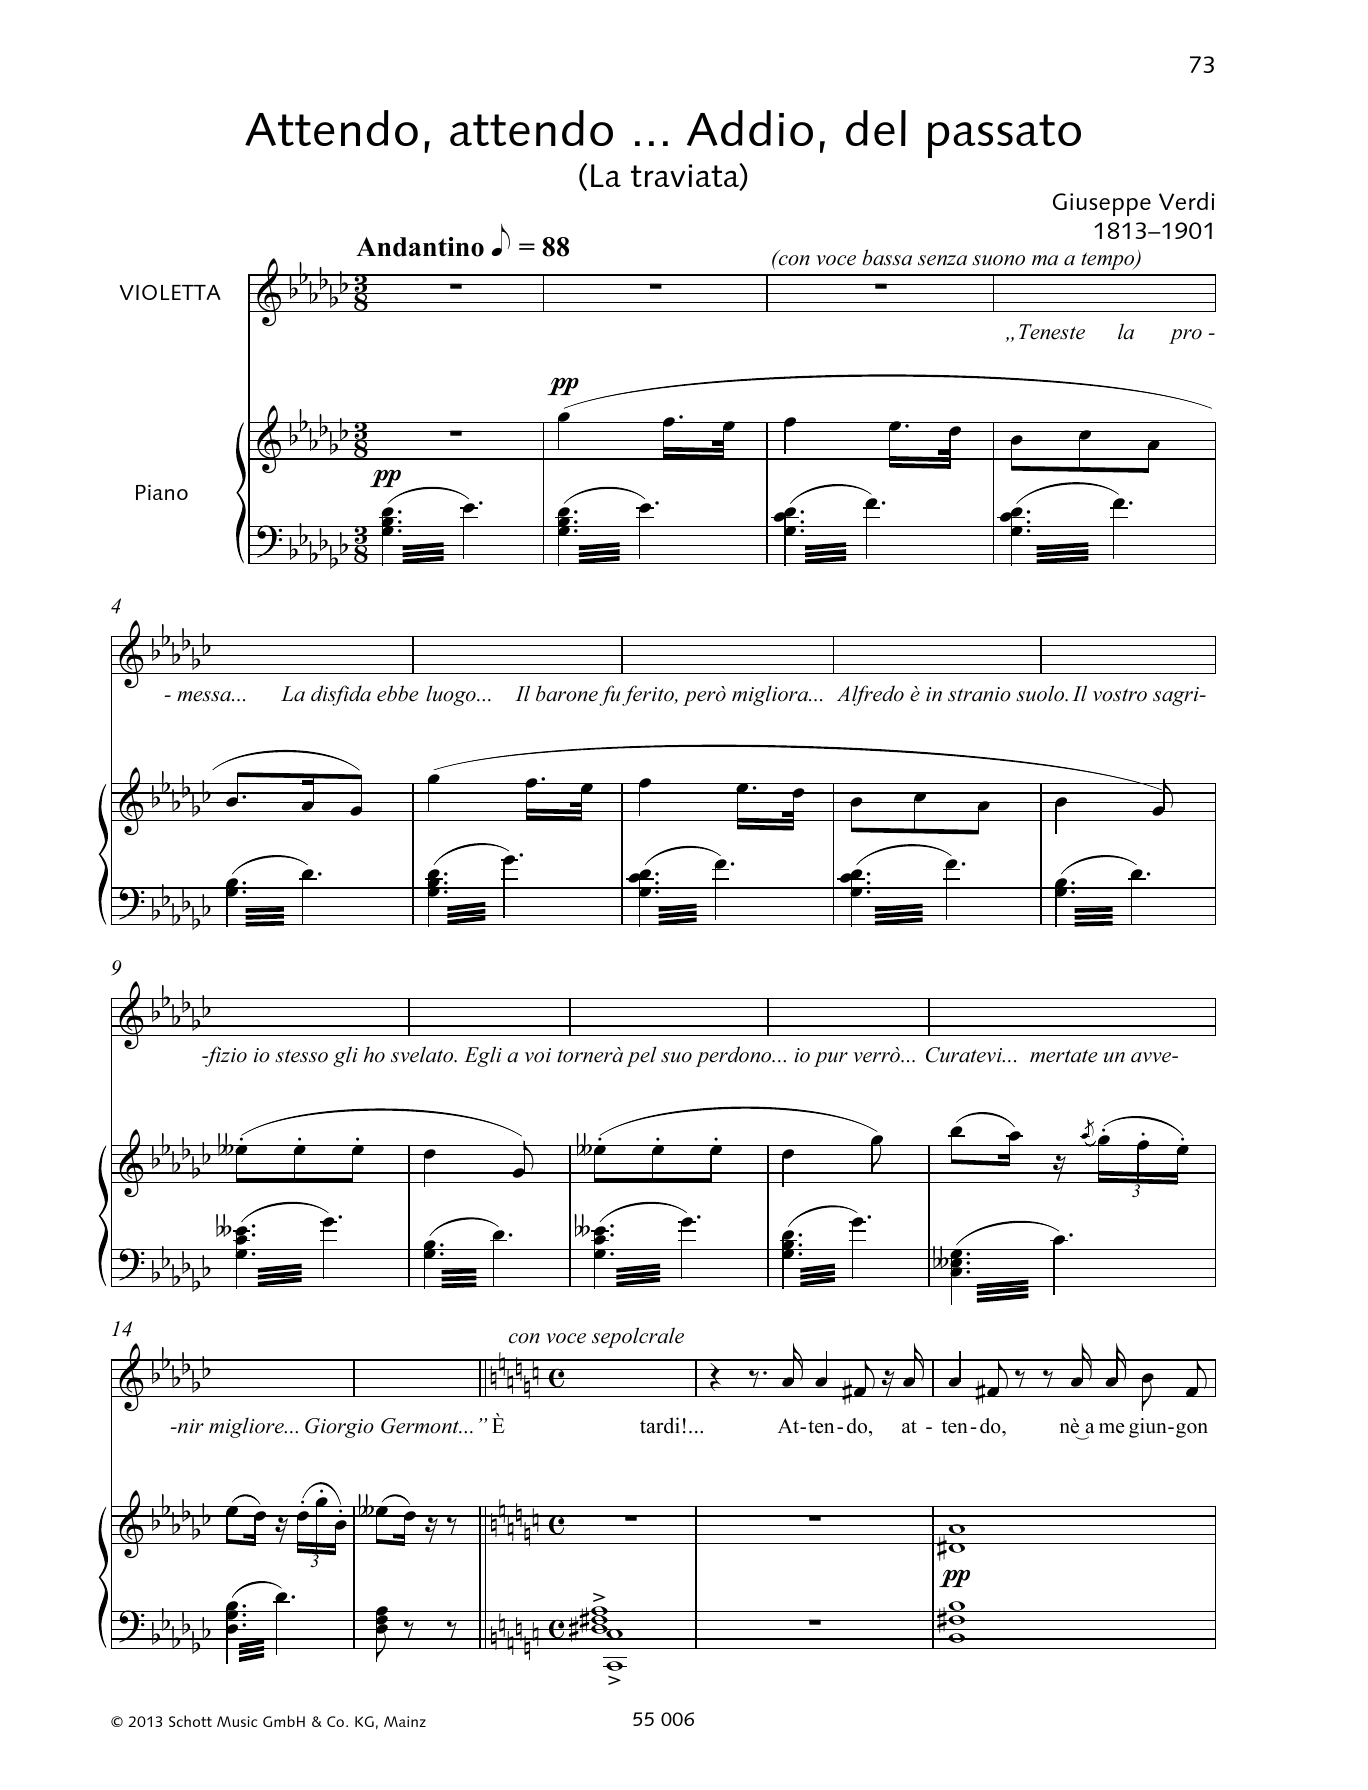 Giuseppe Verdi Attendo, attendo ... Addio, del passato sheet music notes and chords arranged for Piano & Vocal